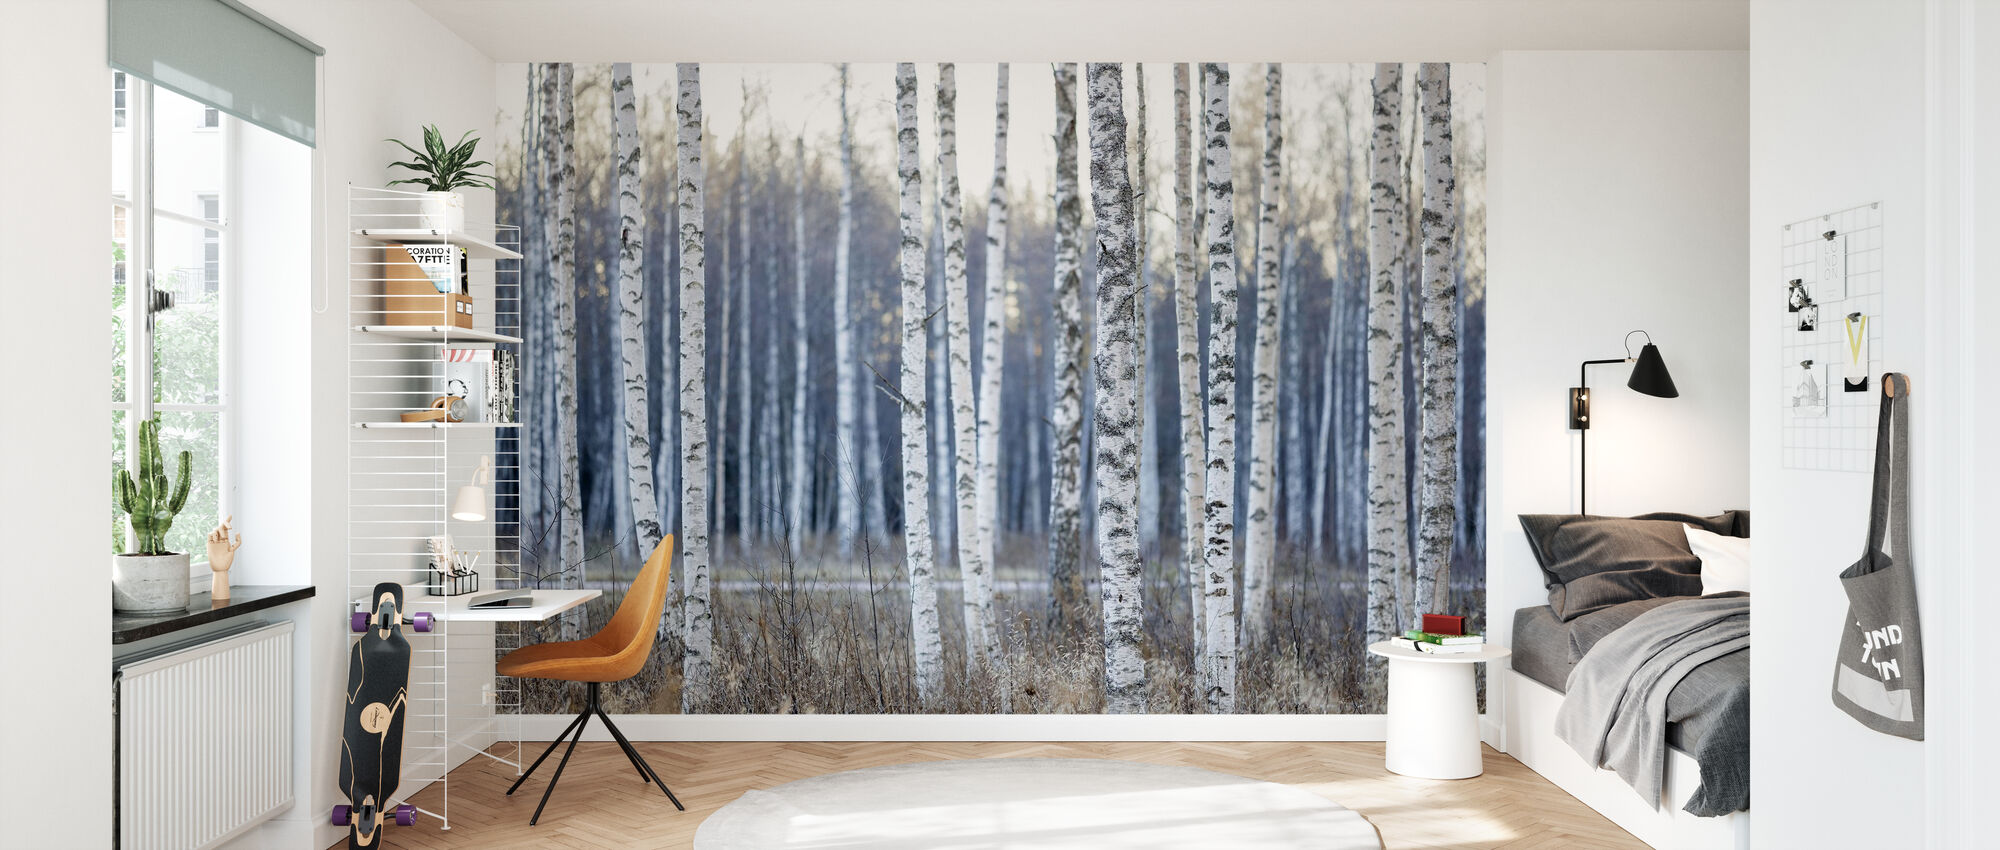 Birch Tree – wall murals online – Photowall